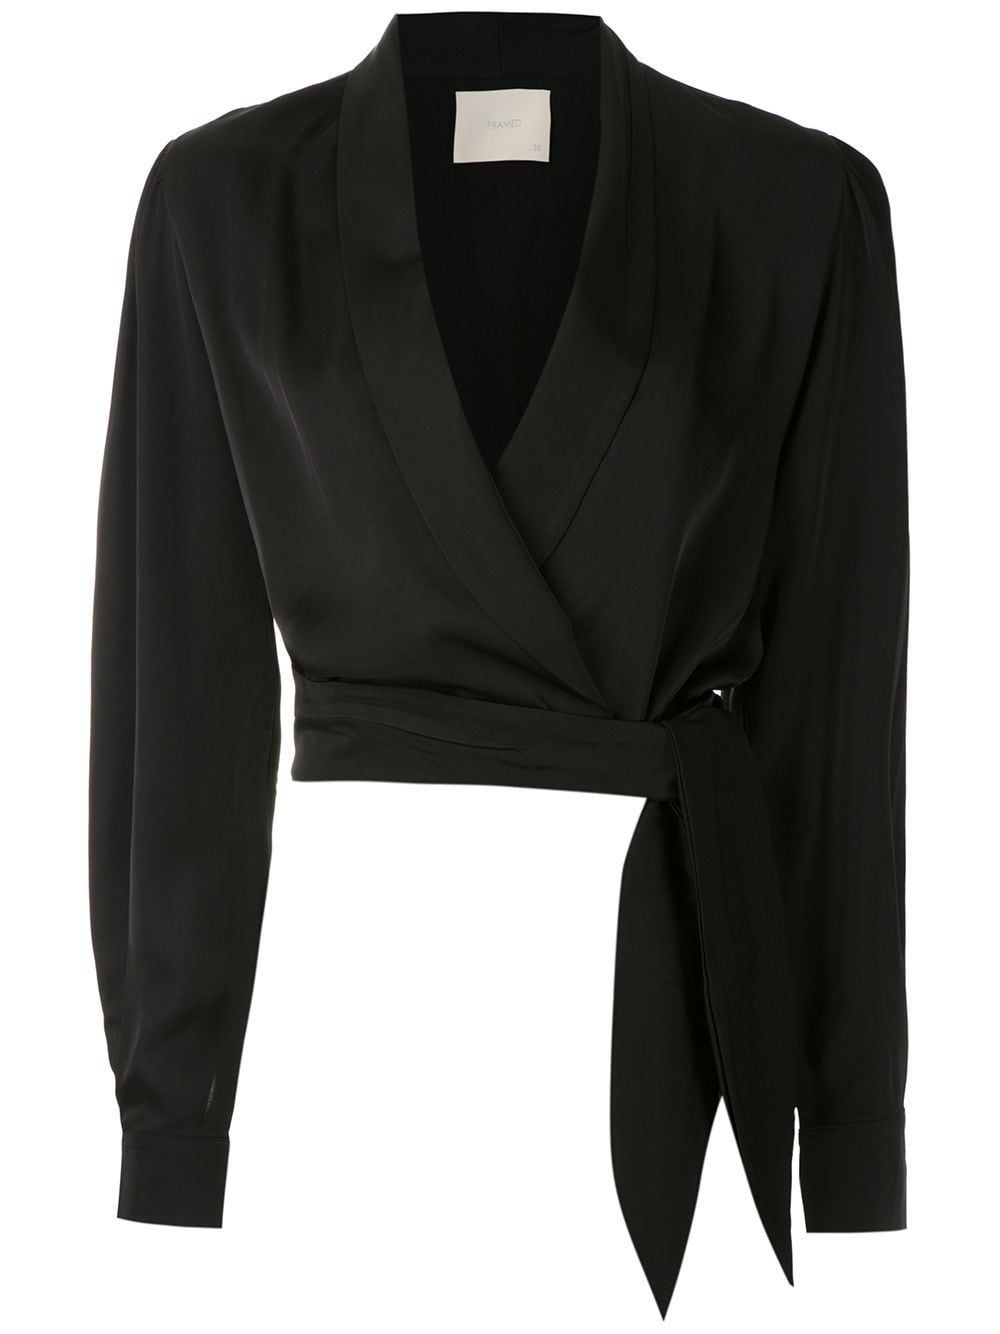 Framed Wrap Cropped Top - Farfetch - Framed Wrap Cropped Top - Farfetch -   19 style Fashion black ideas